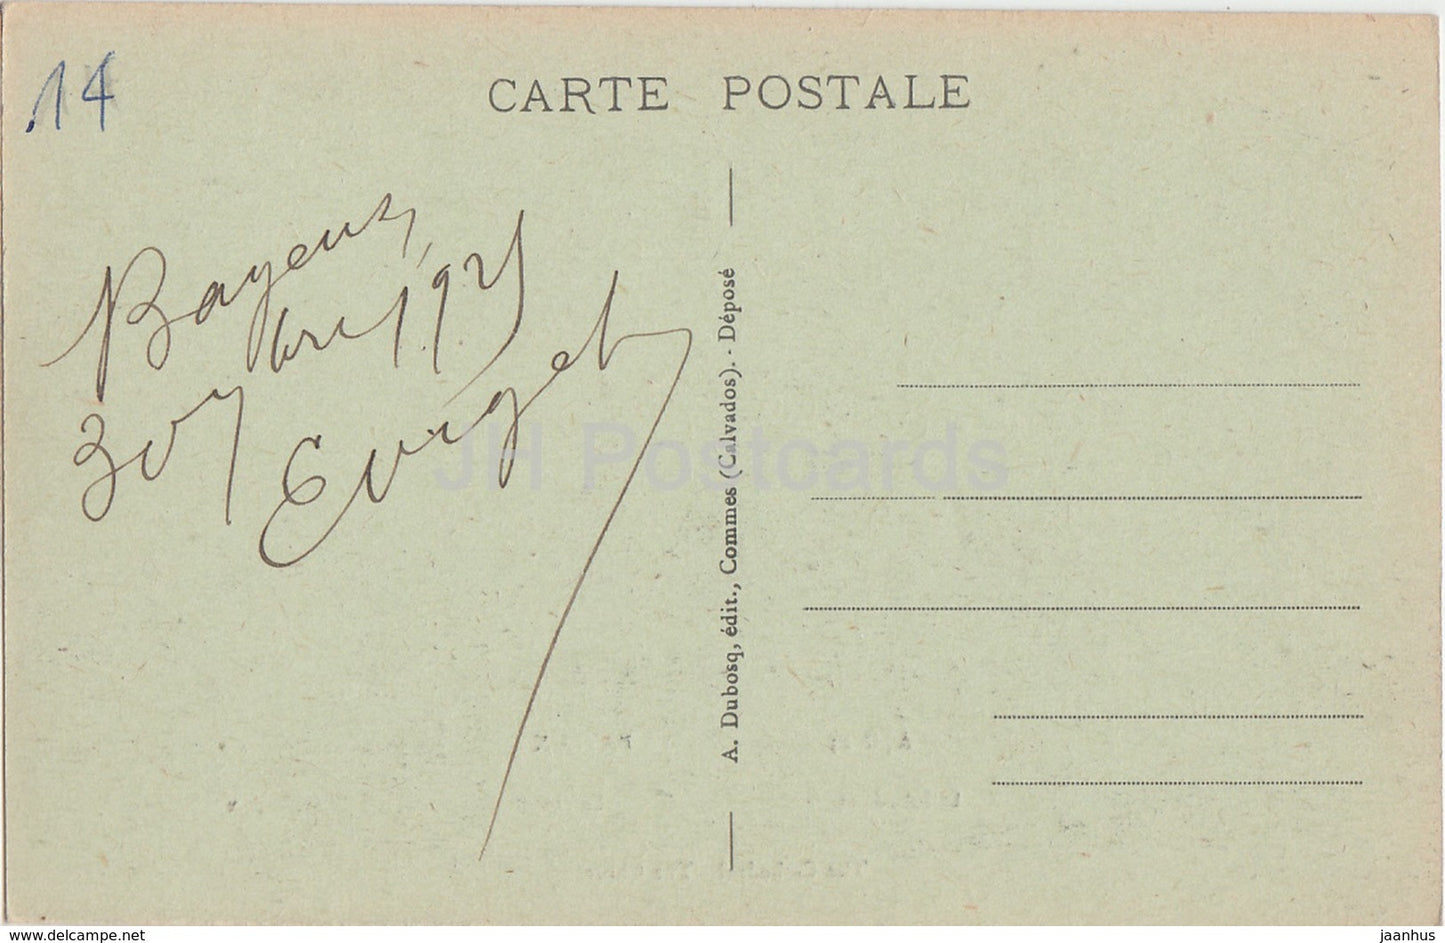 Bayeux - La Cathédrale - Le Choeur - cathédrale - carte postale ancienne - 1921 - France - occasion